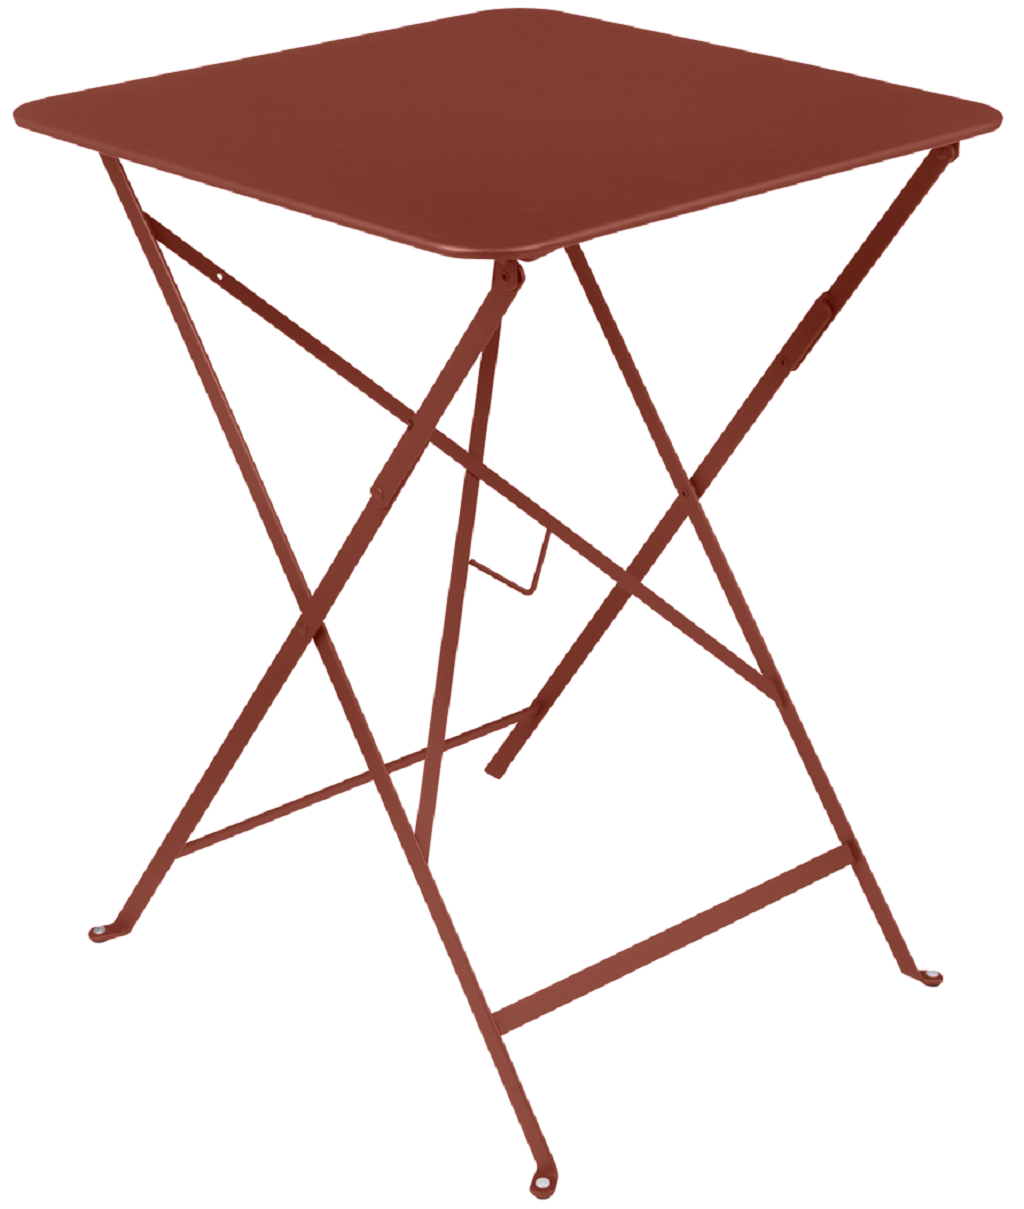 Zemitě červený kovový skládací stůl Fermob Bistro 57 x 57 cm Fermob